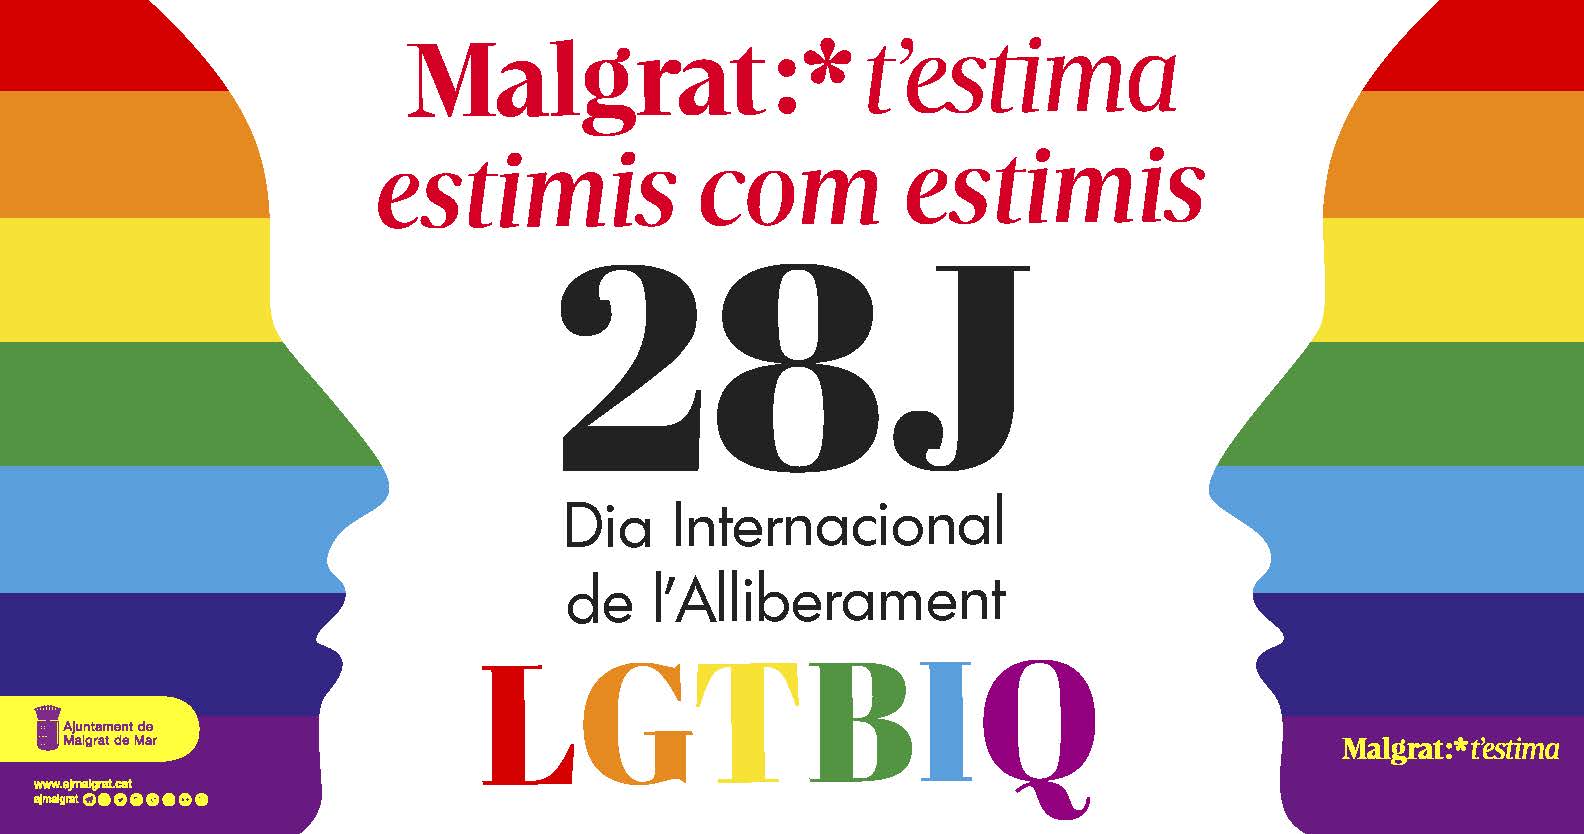 Concert de Lídia Pujol, poesia i teatre per commemorar el Dia Internacional de l'Alliberament LGTBIQ